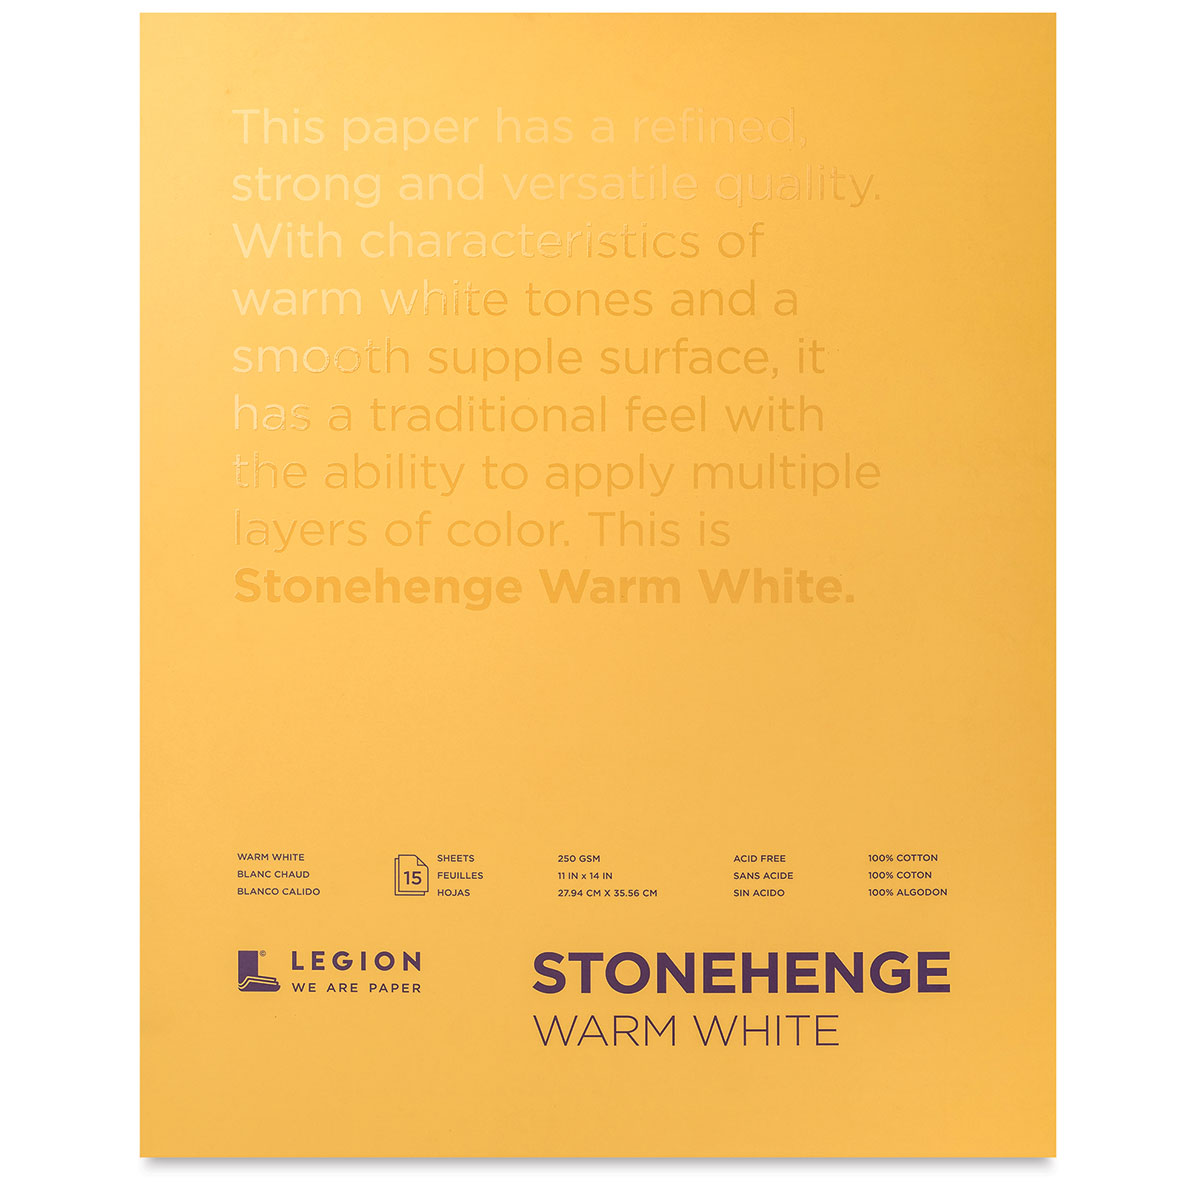 Stonehenge Colors